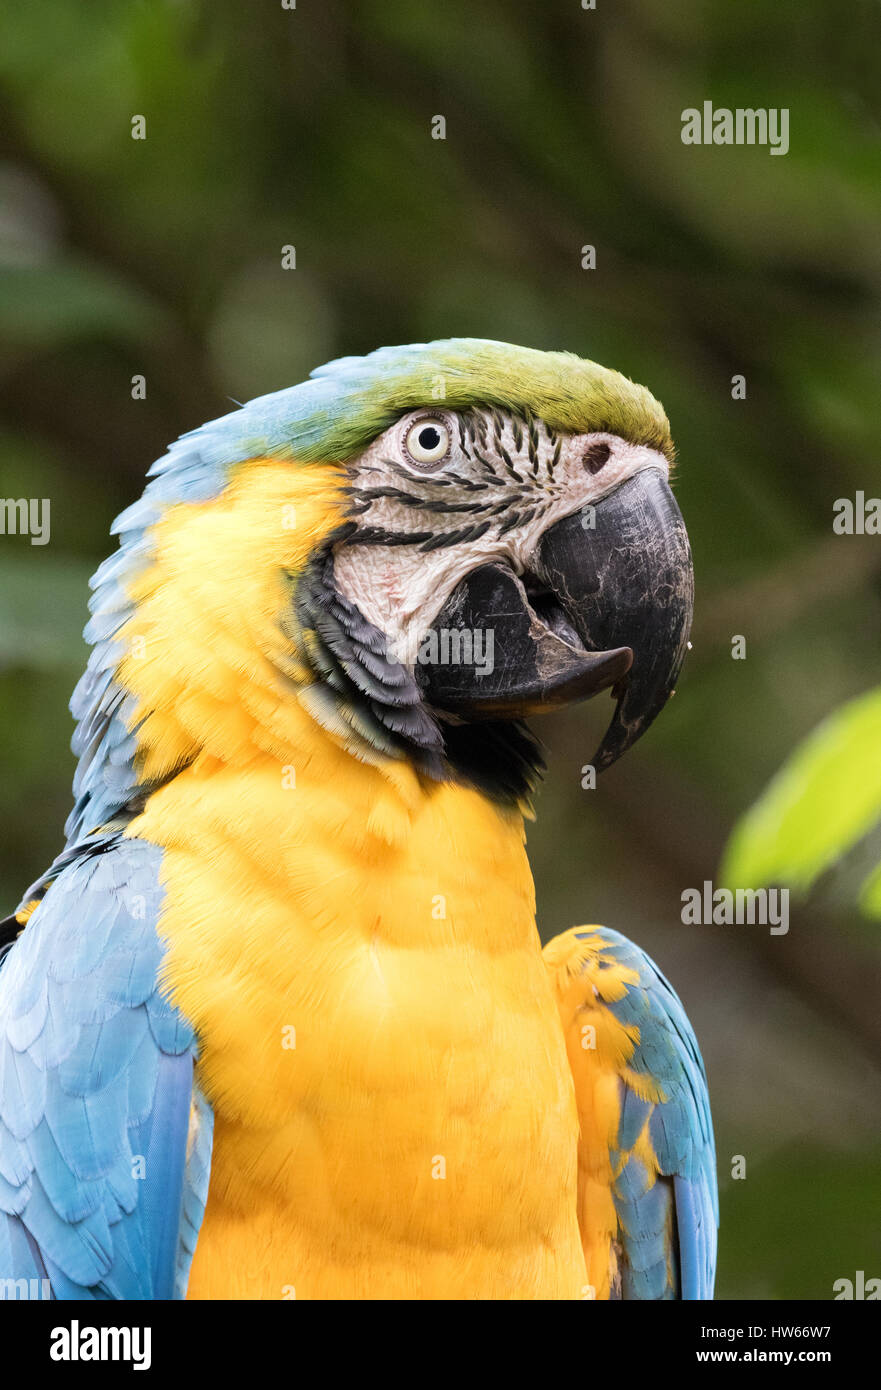 Guacamayo azul y amarillo o guacamayo azul y oro, Ara ararauna, un ave nativa de América del Sur Foto de stock